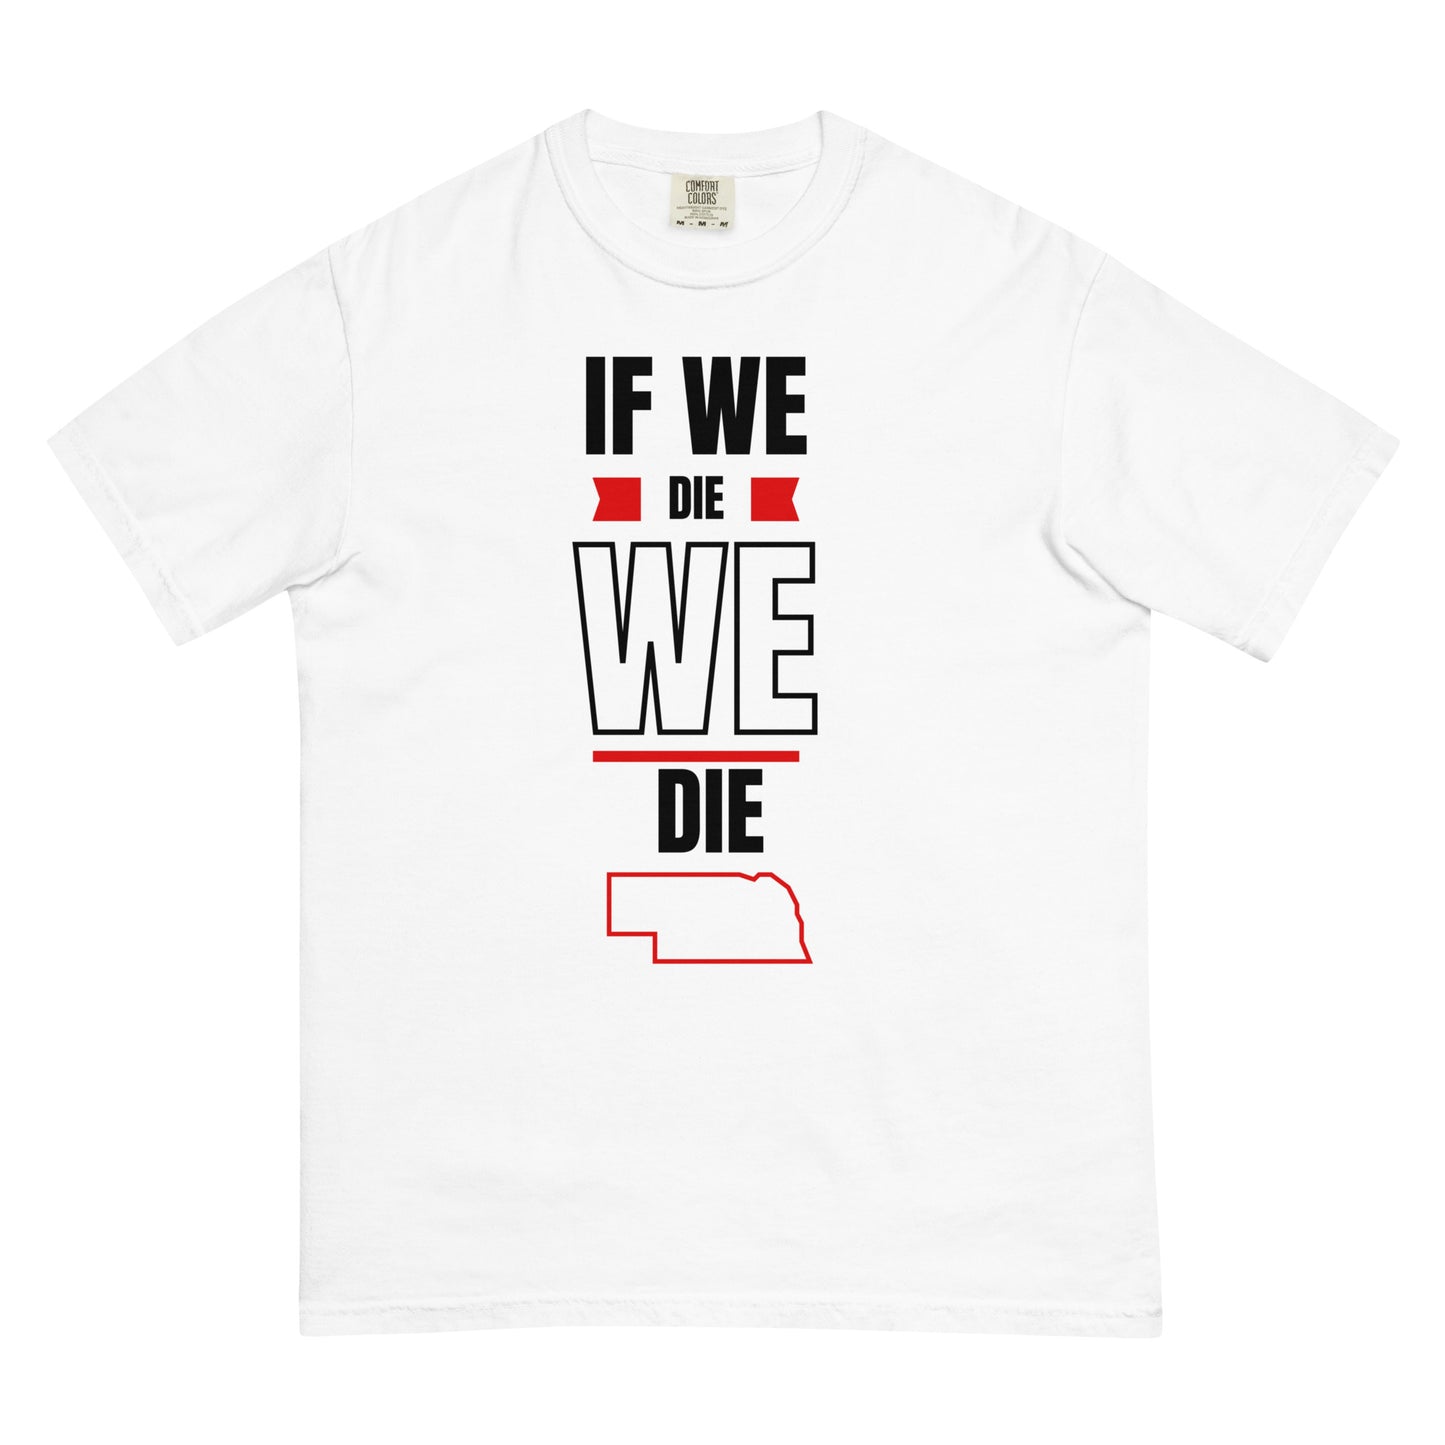 If WE die, WE die. T-shirt